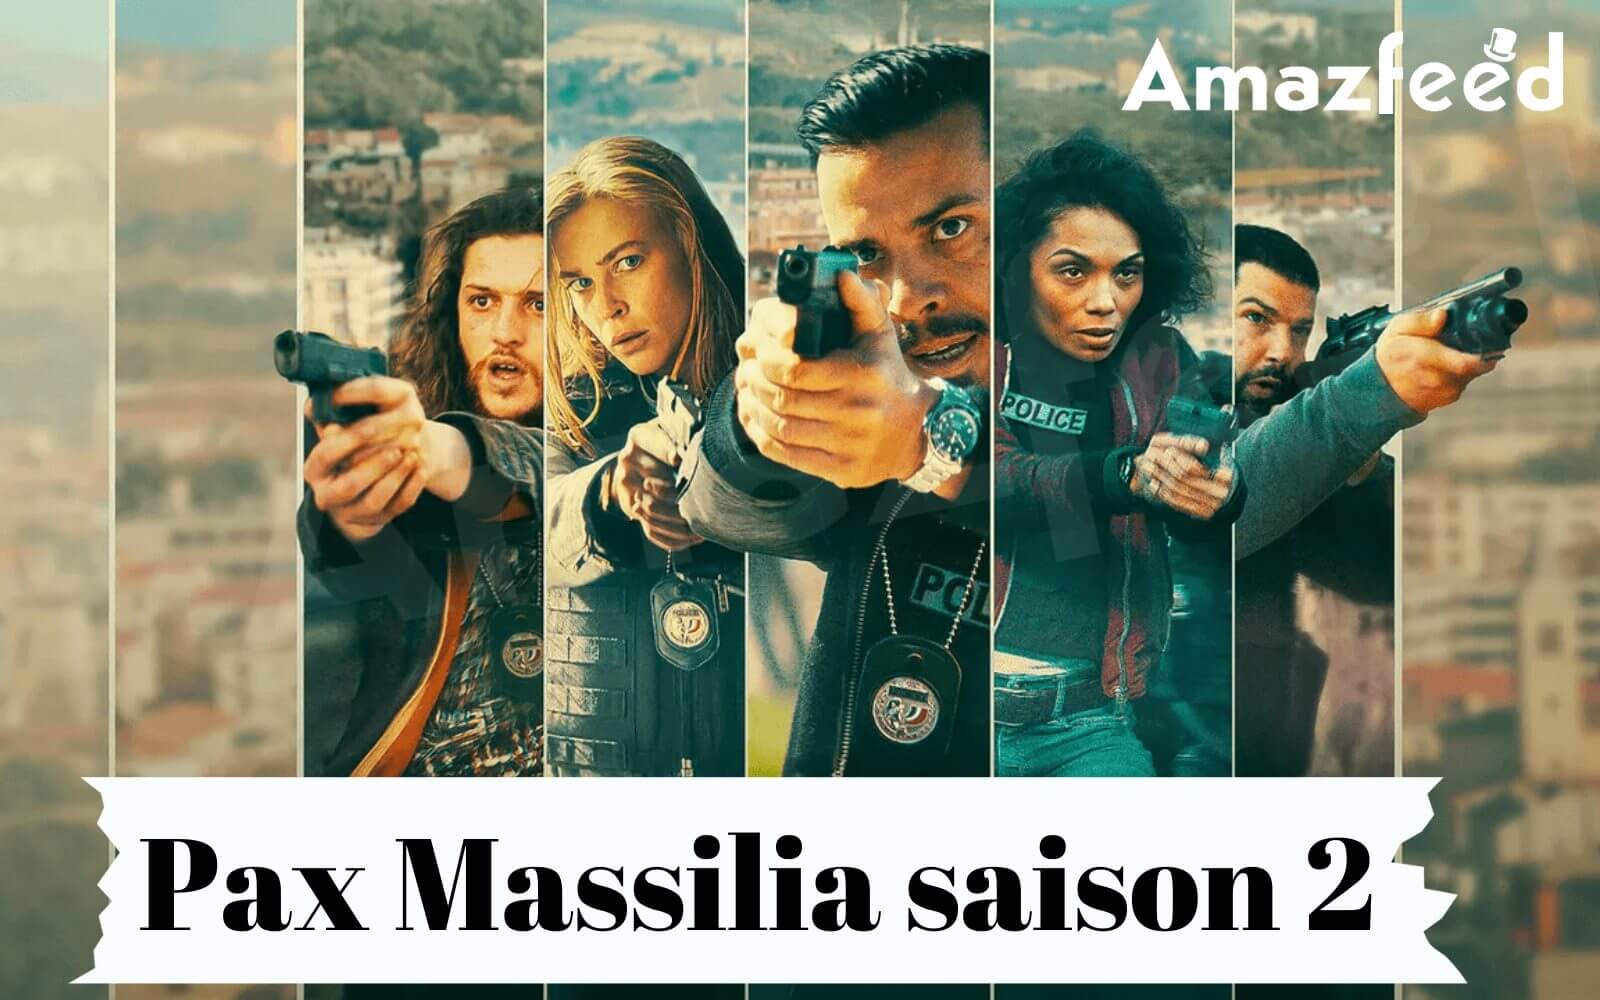 Qui fera partie de la saison 2 de Pax Massilia (Distribution et personnage)